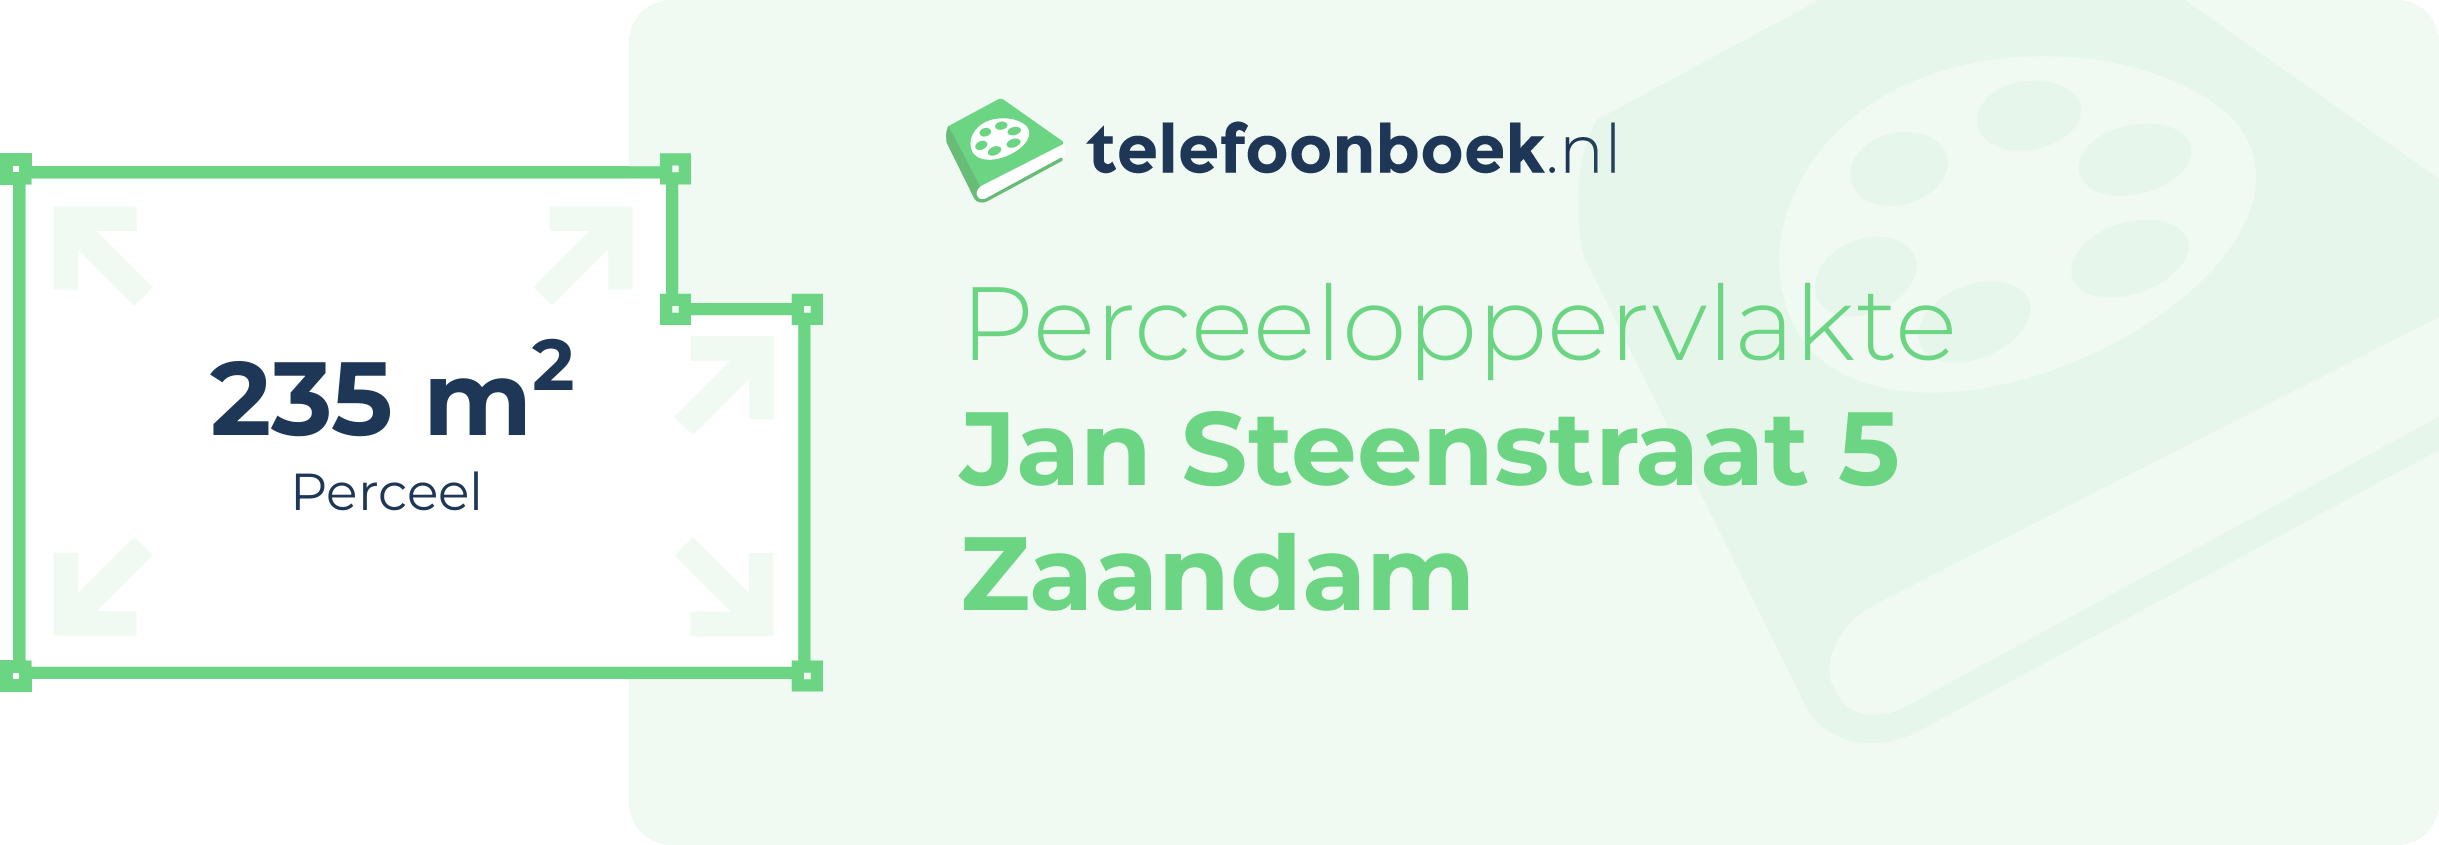 Perceeloppervlakte Jan Steenstraat 5 Zaandam